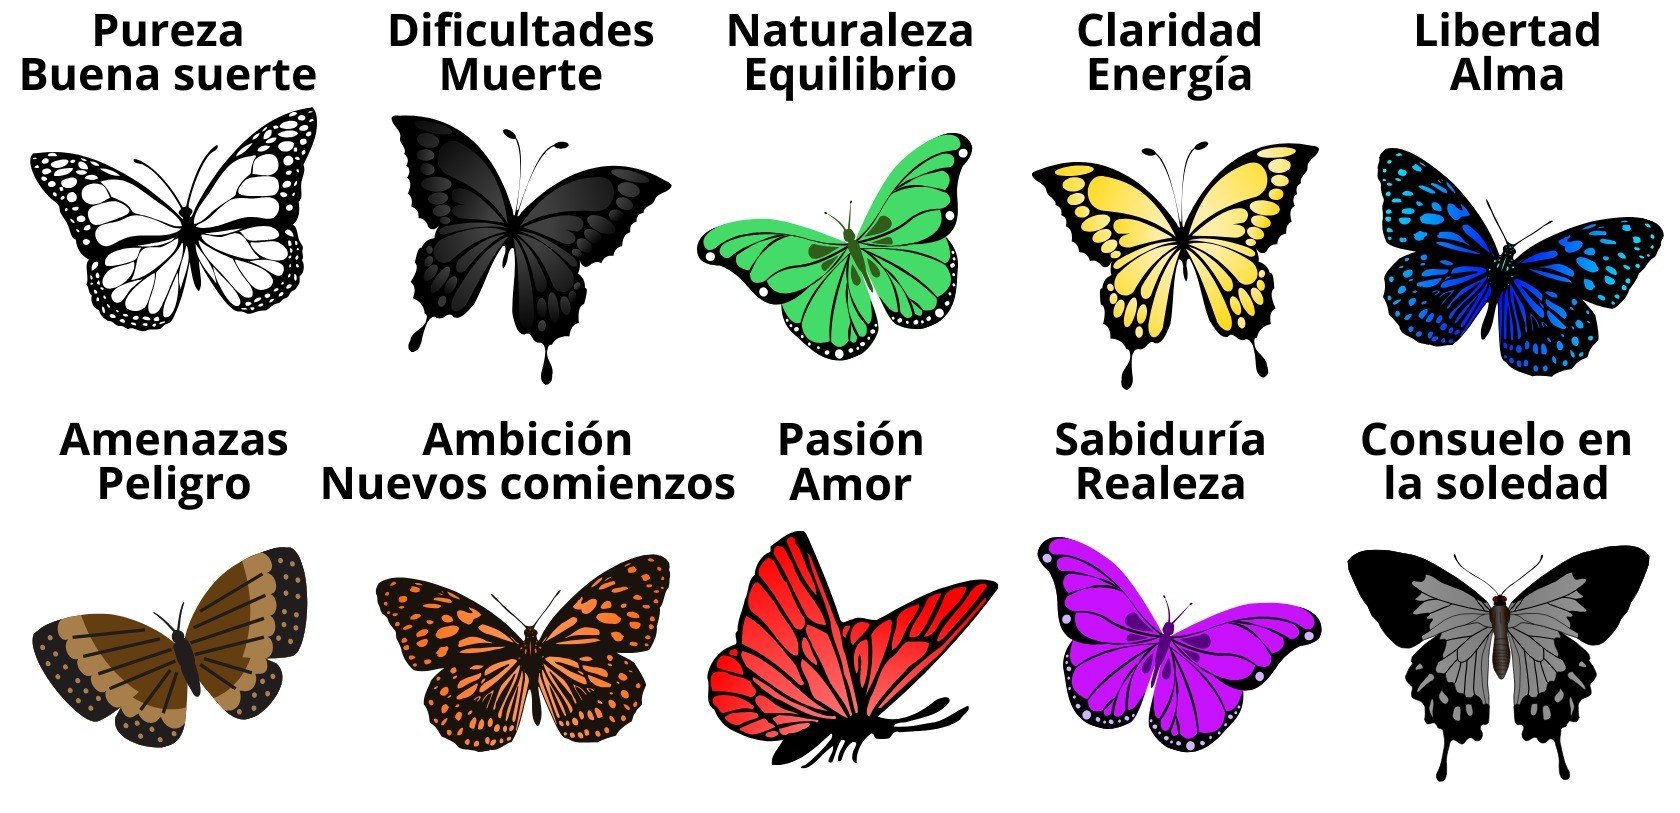 Significado de las mariposas según el color: blancas, negras, verdes, amarillas, azules, café o marrón, naranjas o monarca, rojas, moradas y grises